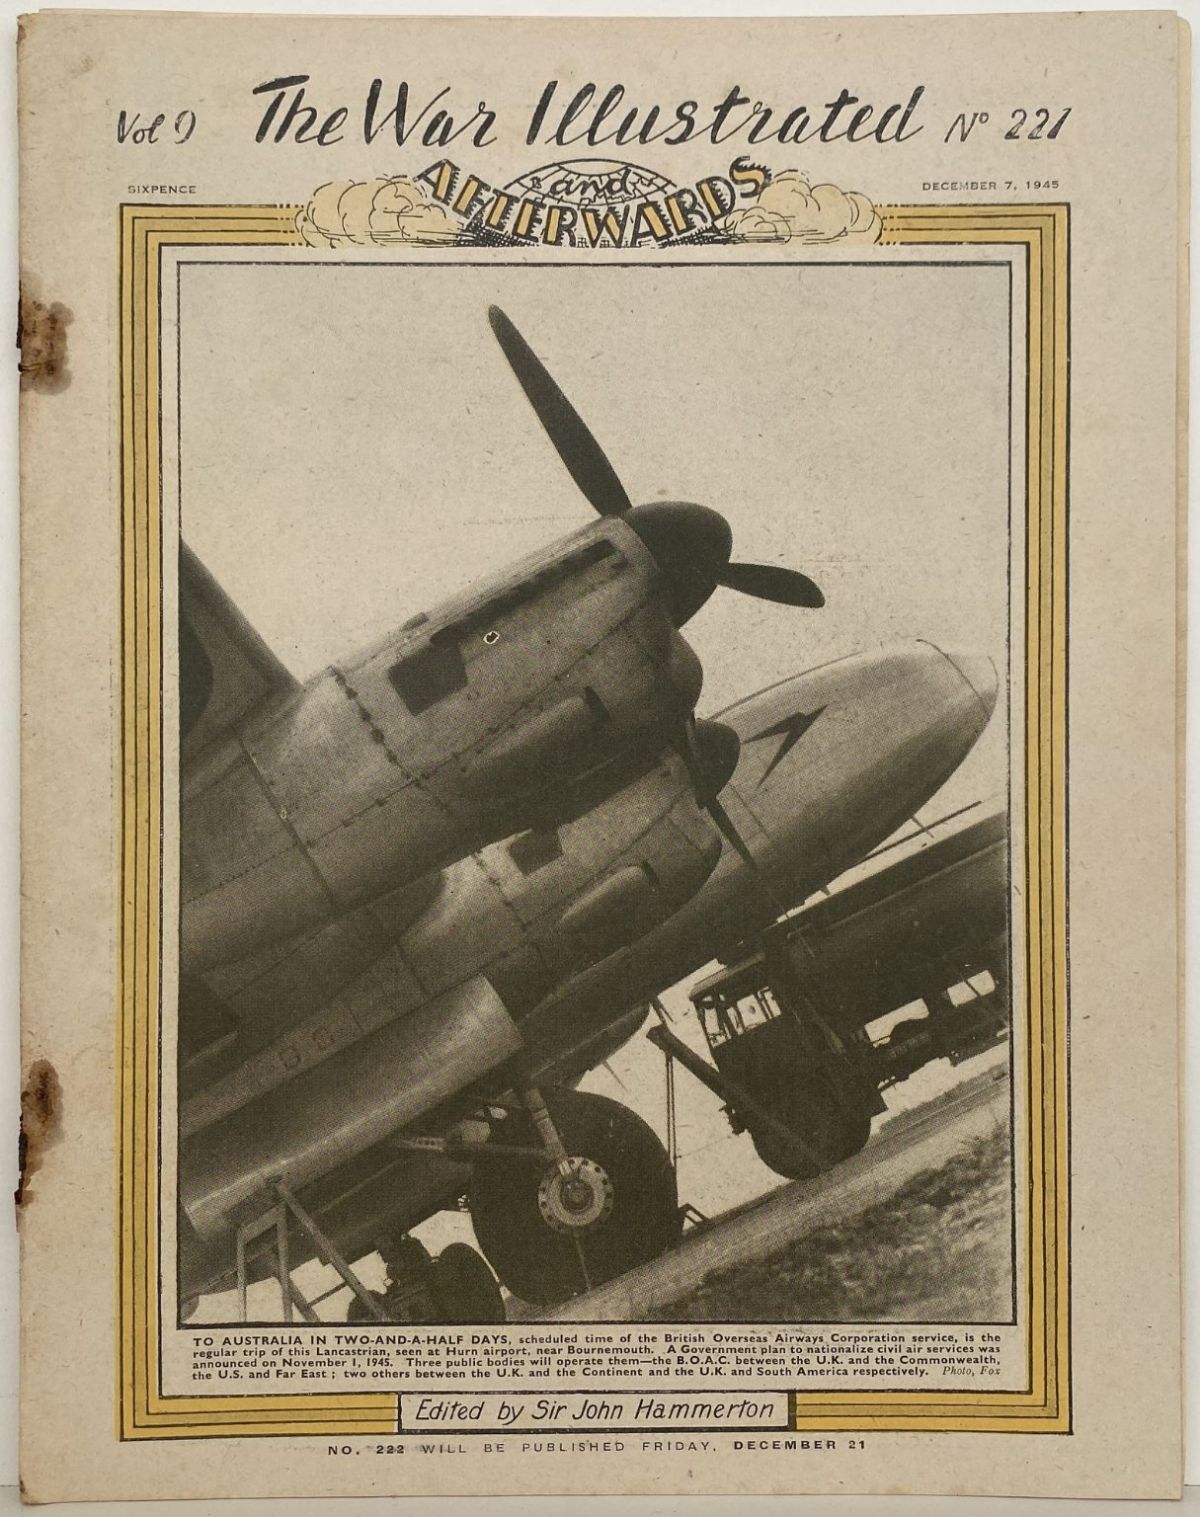 THE WAR ILLUSTRATED - Vol 9, No 221, 7th Dec 1945